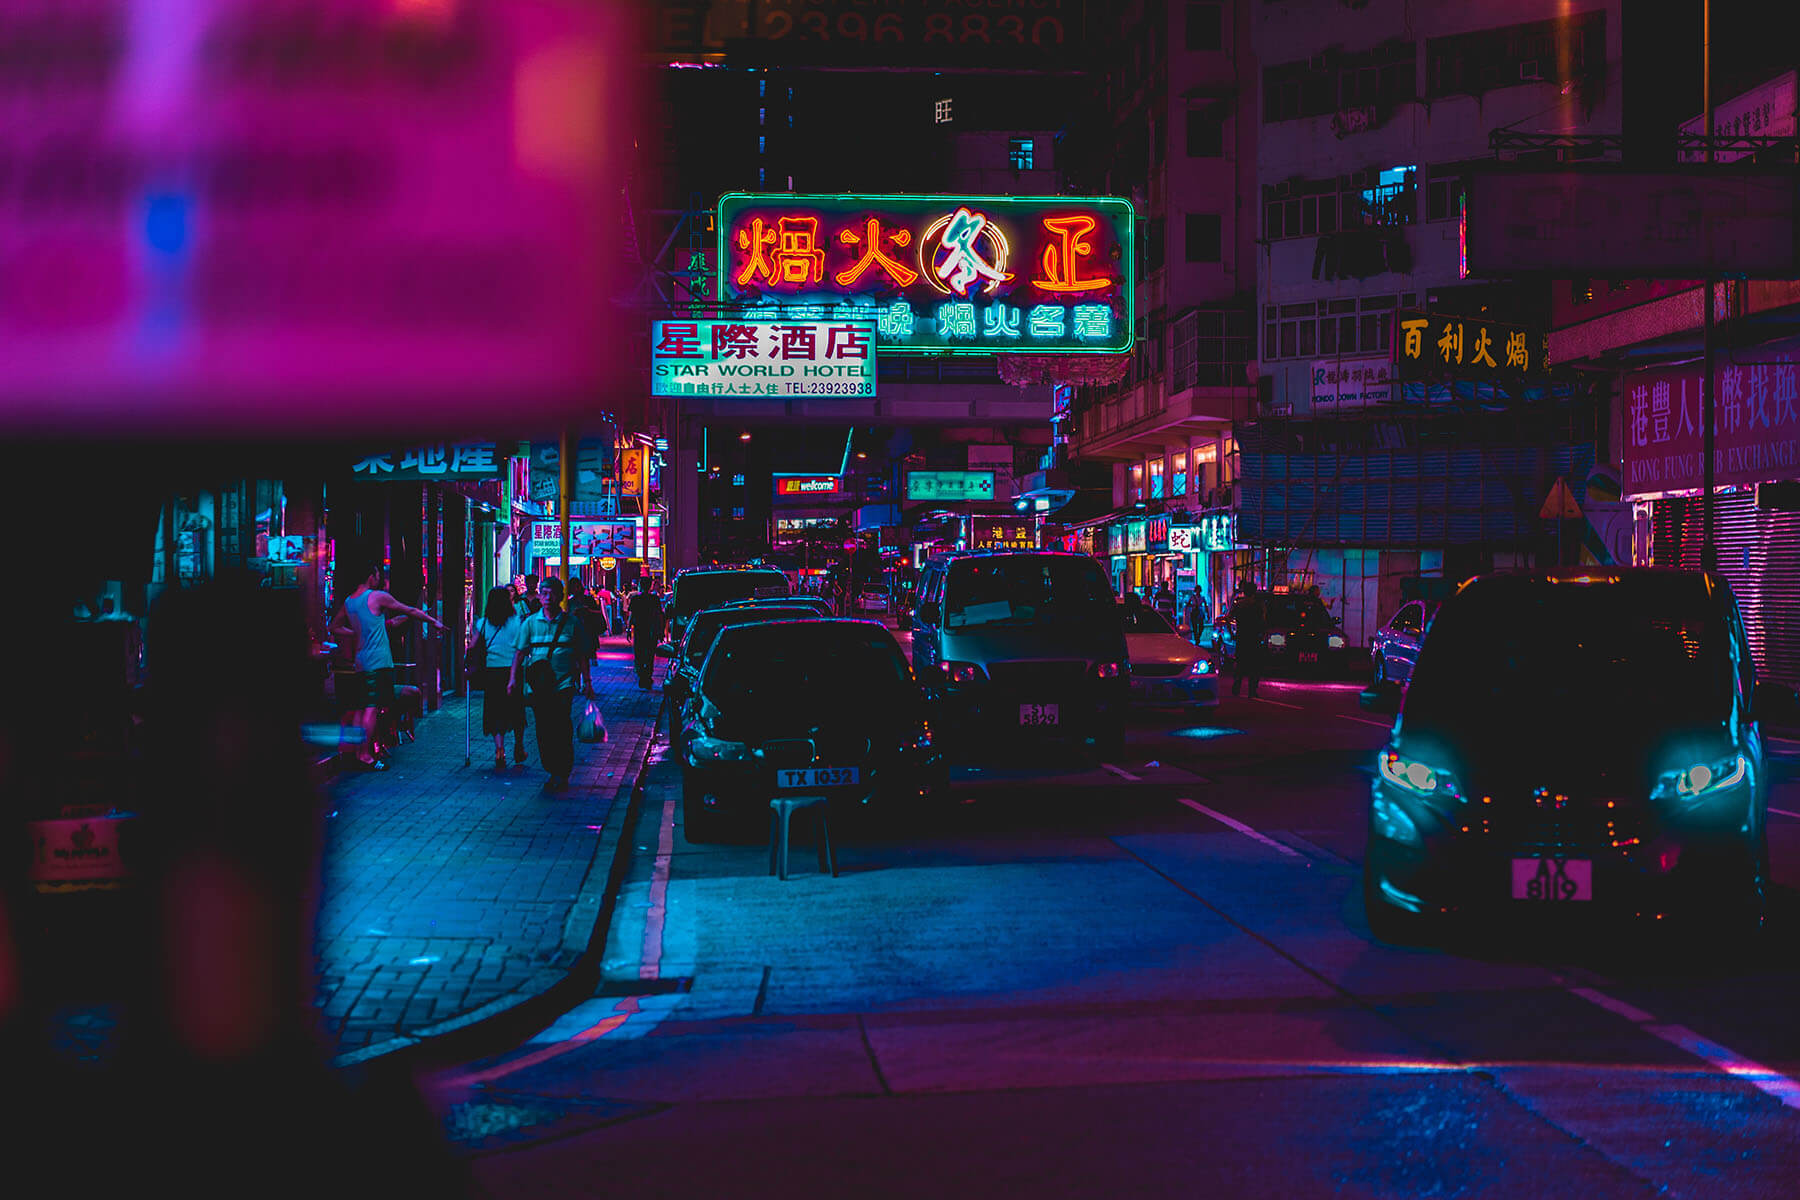 Tour Hồng Kông: Tour Hồng Kông - Hành trình khám phá con đường phát triển kinh tế của châu Á. Nơi đây đầy sắc màu với nét văn hóa đặc sắc. Cùng chúng tôi trải nghiệm những khoảnh khắc đáng nhớ tại Hồng Kông.